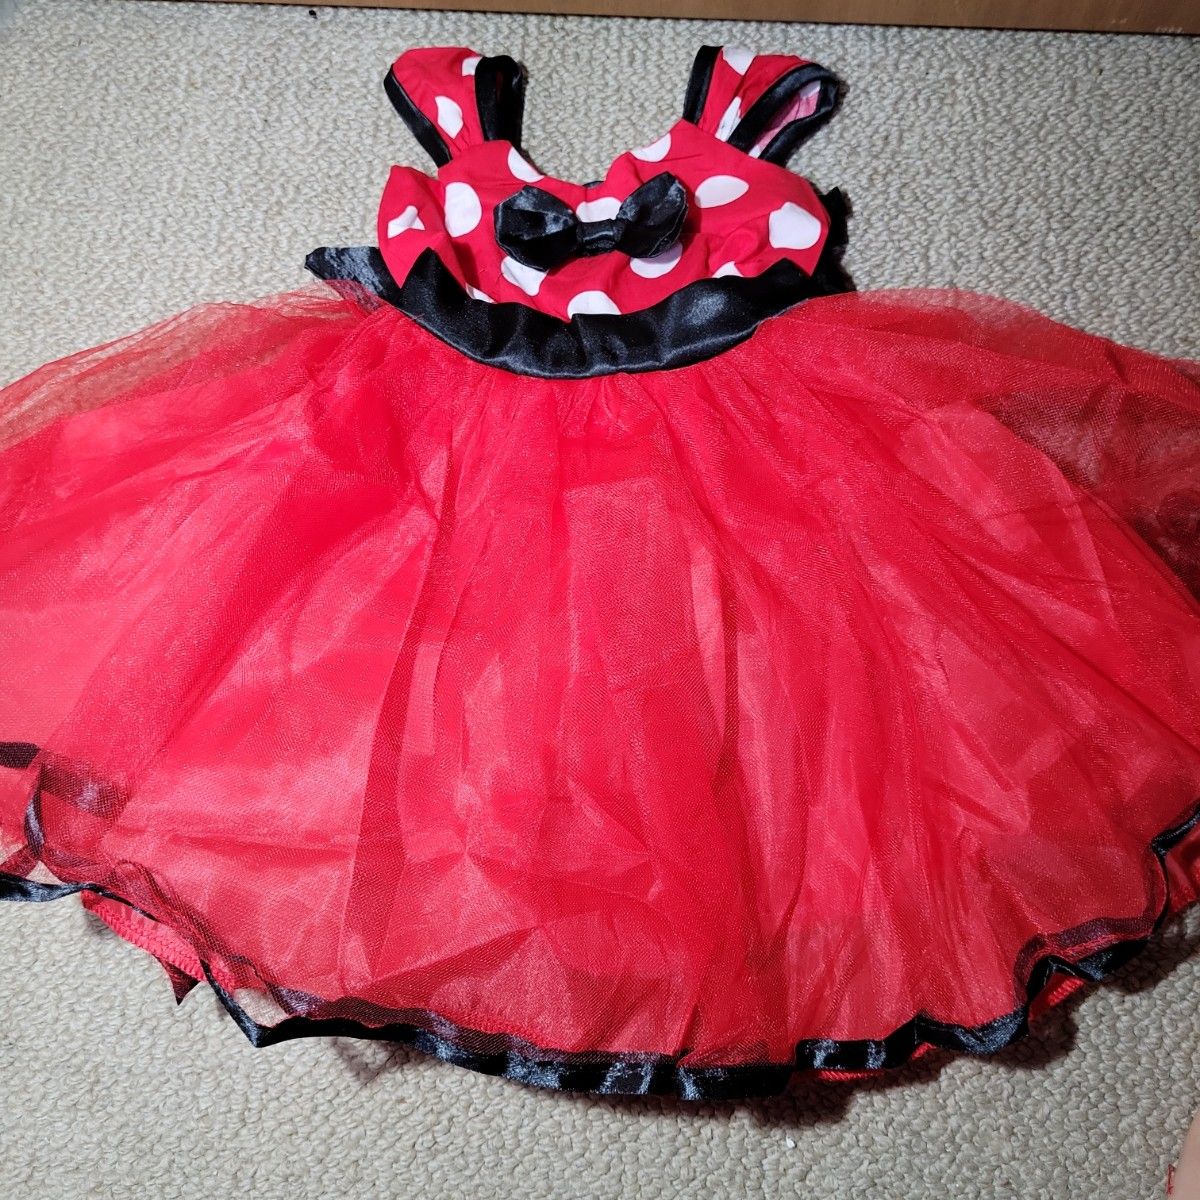 ベビー服 コスプレ ハロウィン 仮装 衣装 プリンセス 1歳 ドレス パーティ ミニー ワンピース お誕生日 赤 ドット サンタ